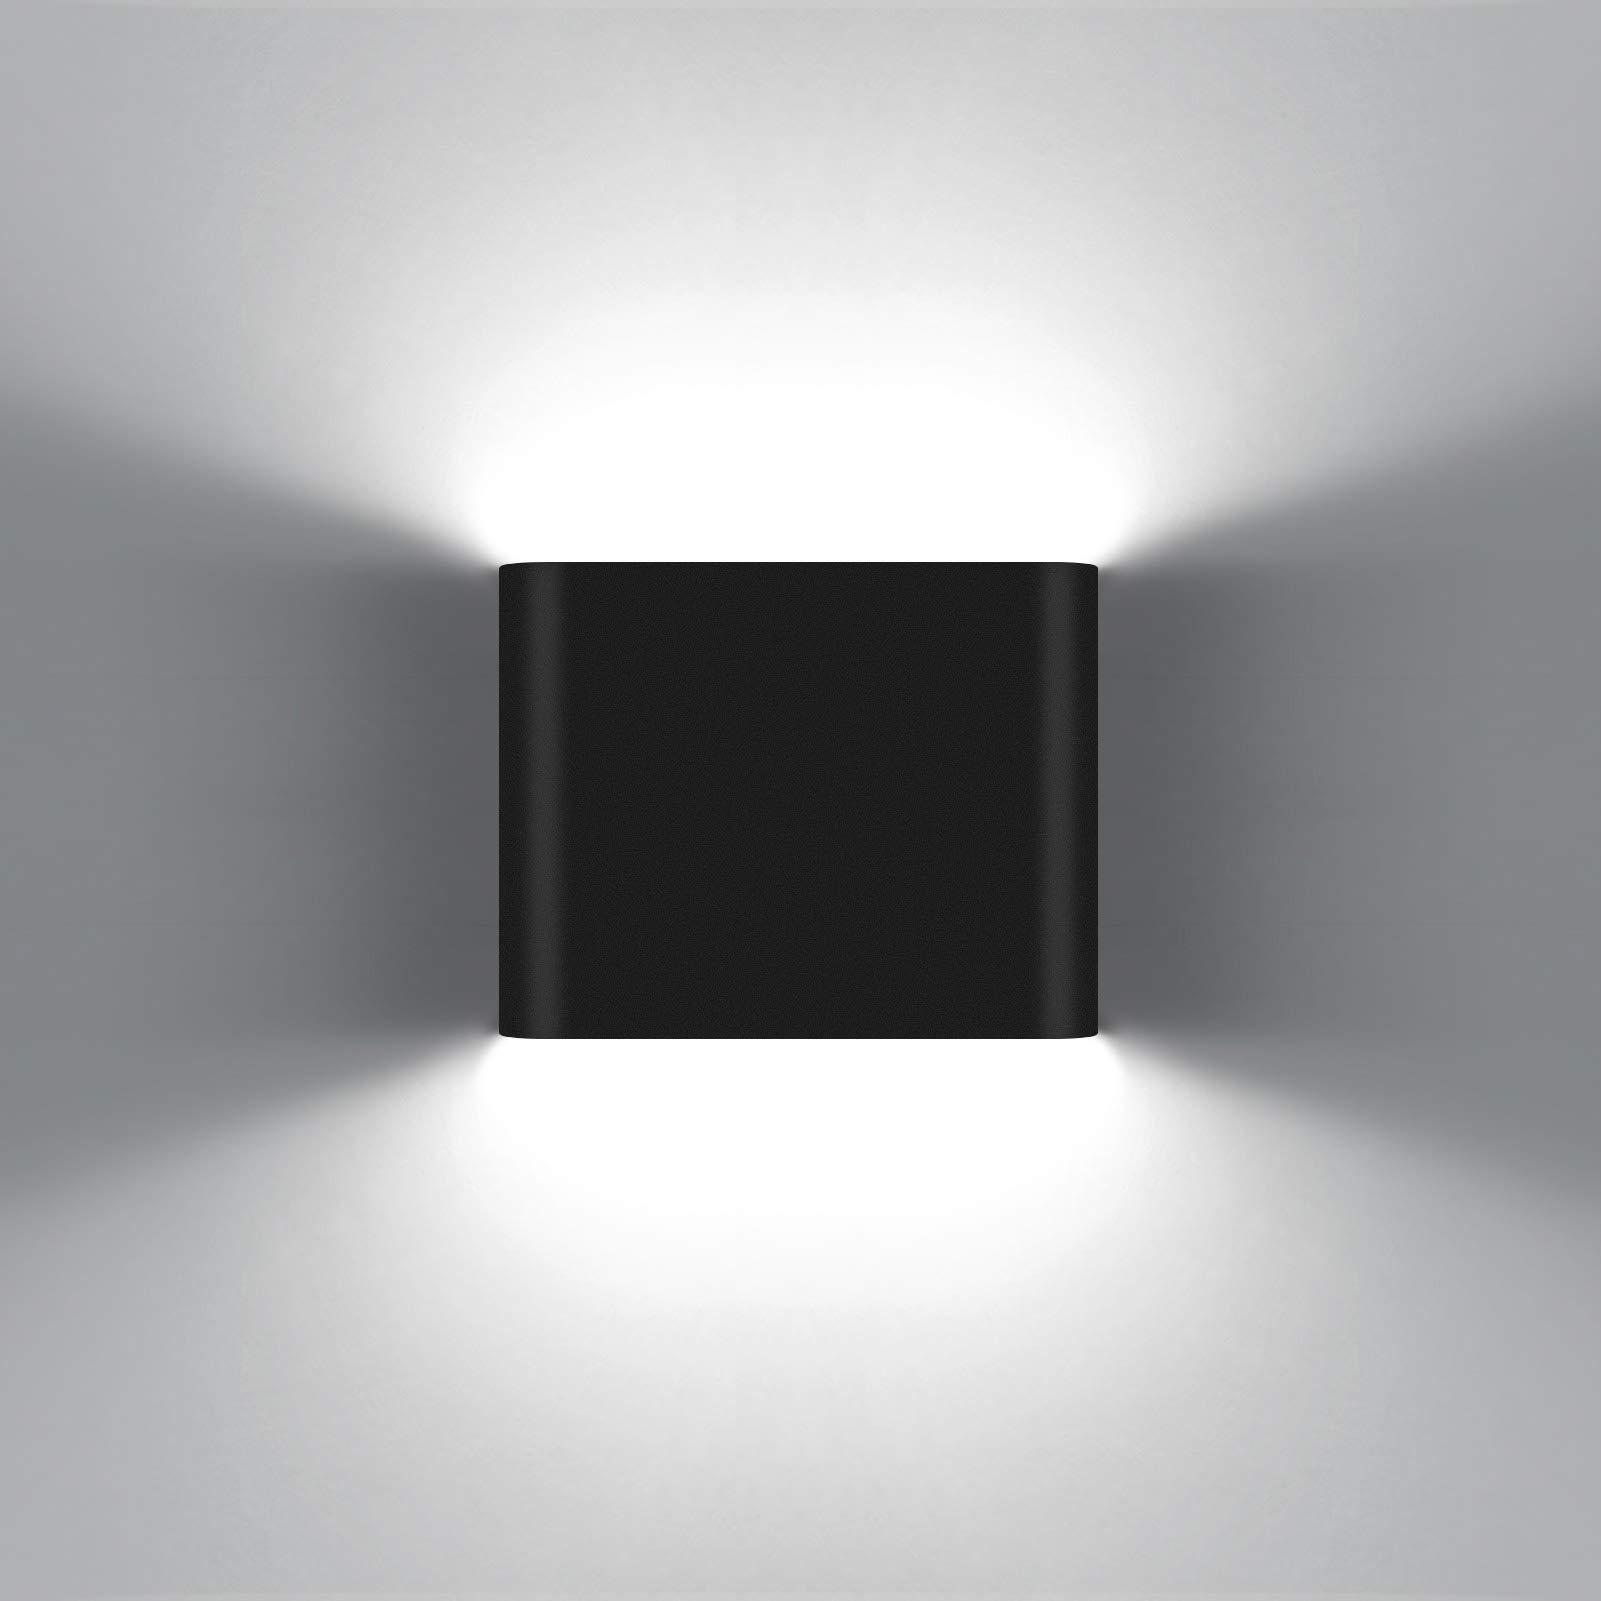 KAWELL 6W Modern Wandlampe LED Wandleuchte Up Down Aluminium Wandbeleuchtung Wasserdicht IP65 Innen Außen für Schlafzimmer Badezimmer Wohnzimmer Flur Treppen Korridor, Schwarz 6000K